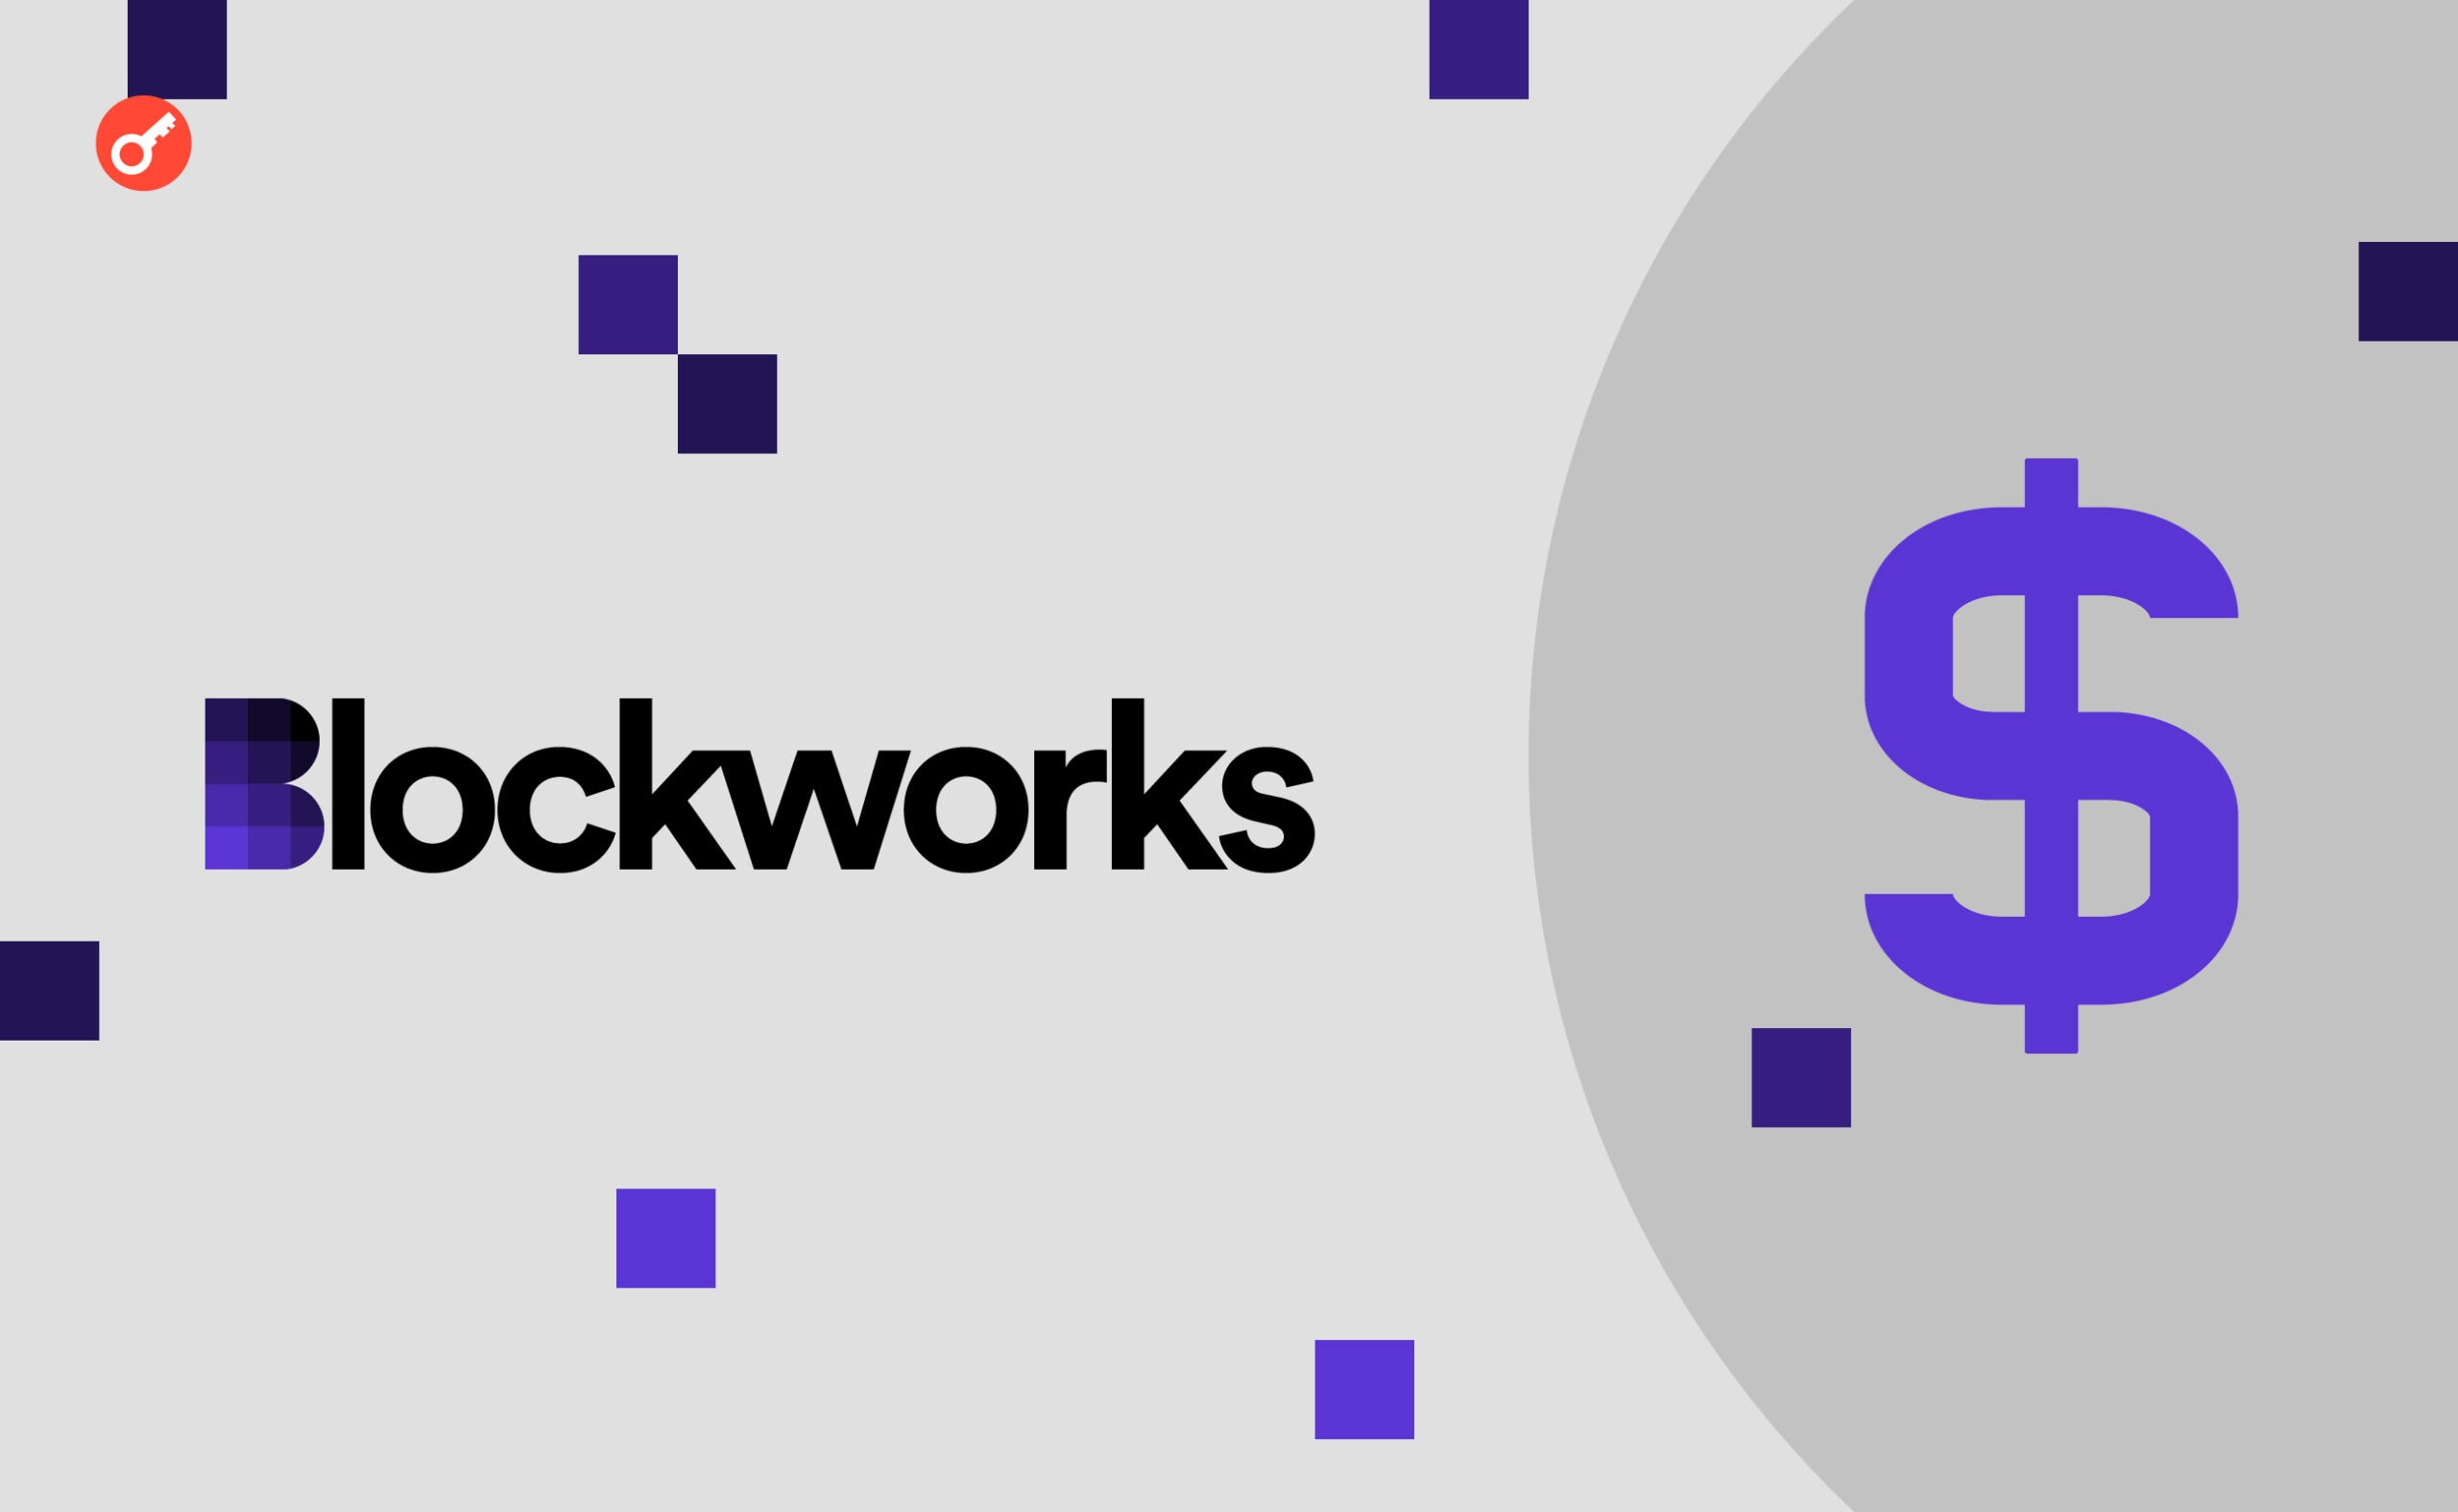 Blockworks pozyskał 12 mln dolarów przy wycenie 135 mln dolarów. Główny kolaż wiadomości.